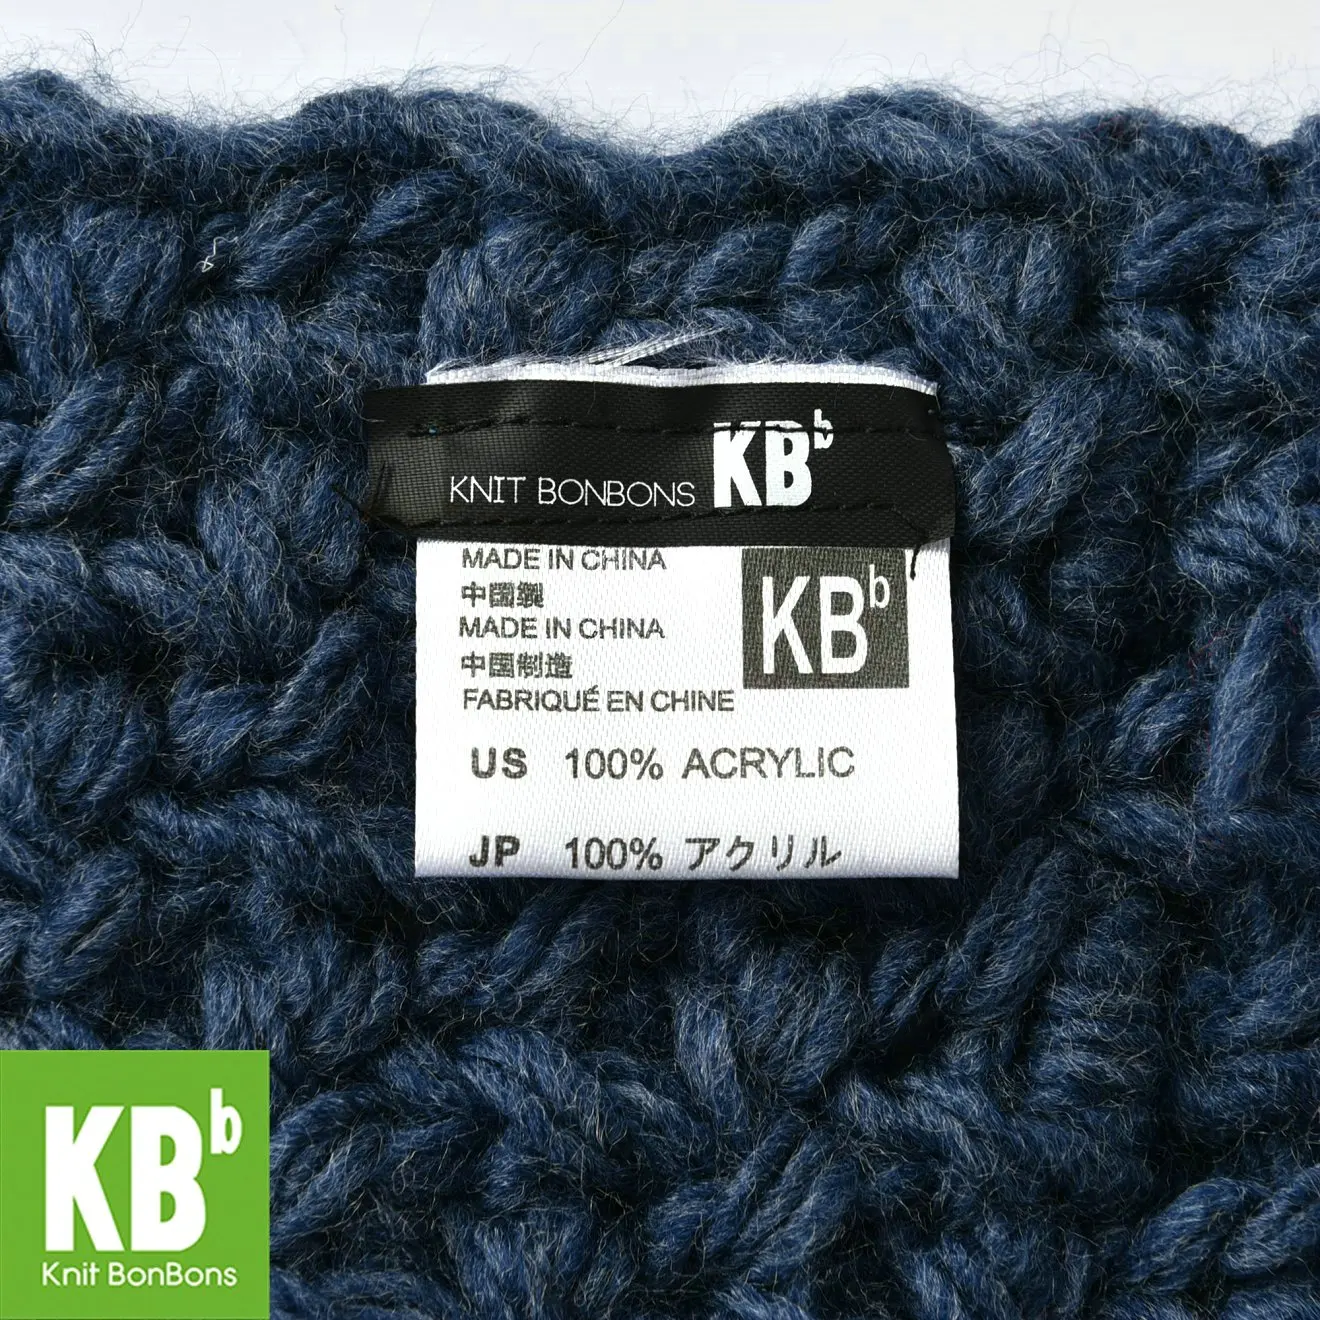 KBB весенний популярный стильный объемный кружевной шерстяной шарф из овечьей шерсти, вязаный теплый шарф для шеи, шарфы для женщин и мужчин